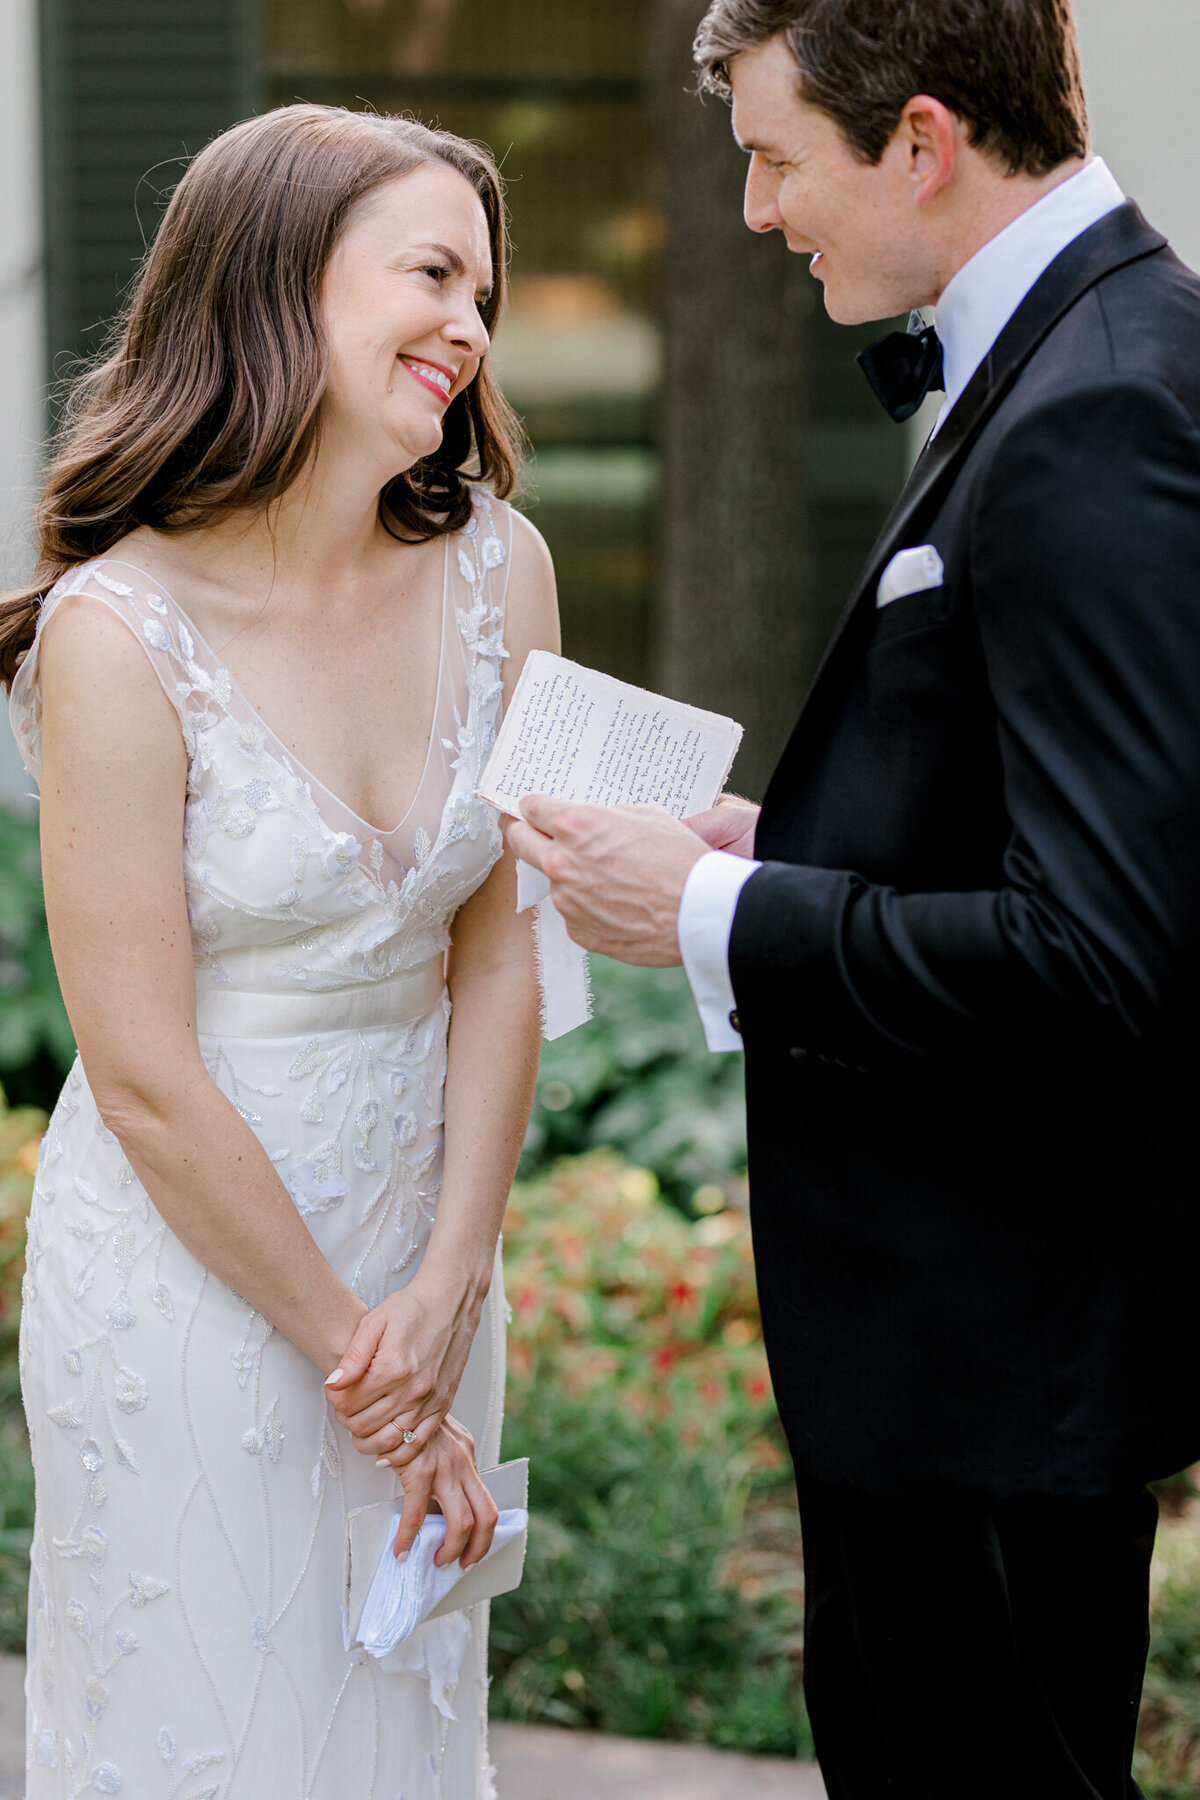 Gena & Matt's Wedding at the Dallas Arboretum | Dallas Wedding Photographer | Sami Kathryn Photography-81